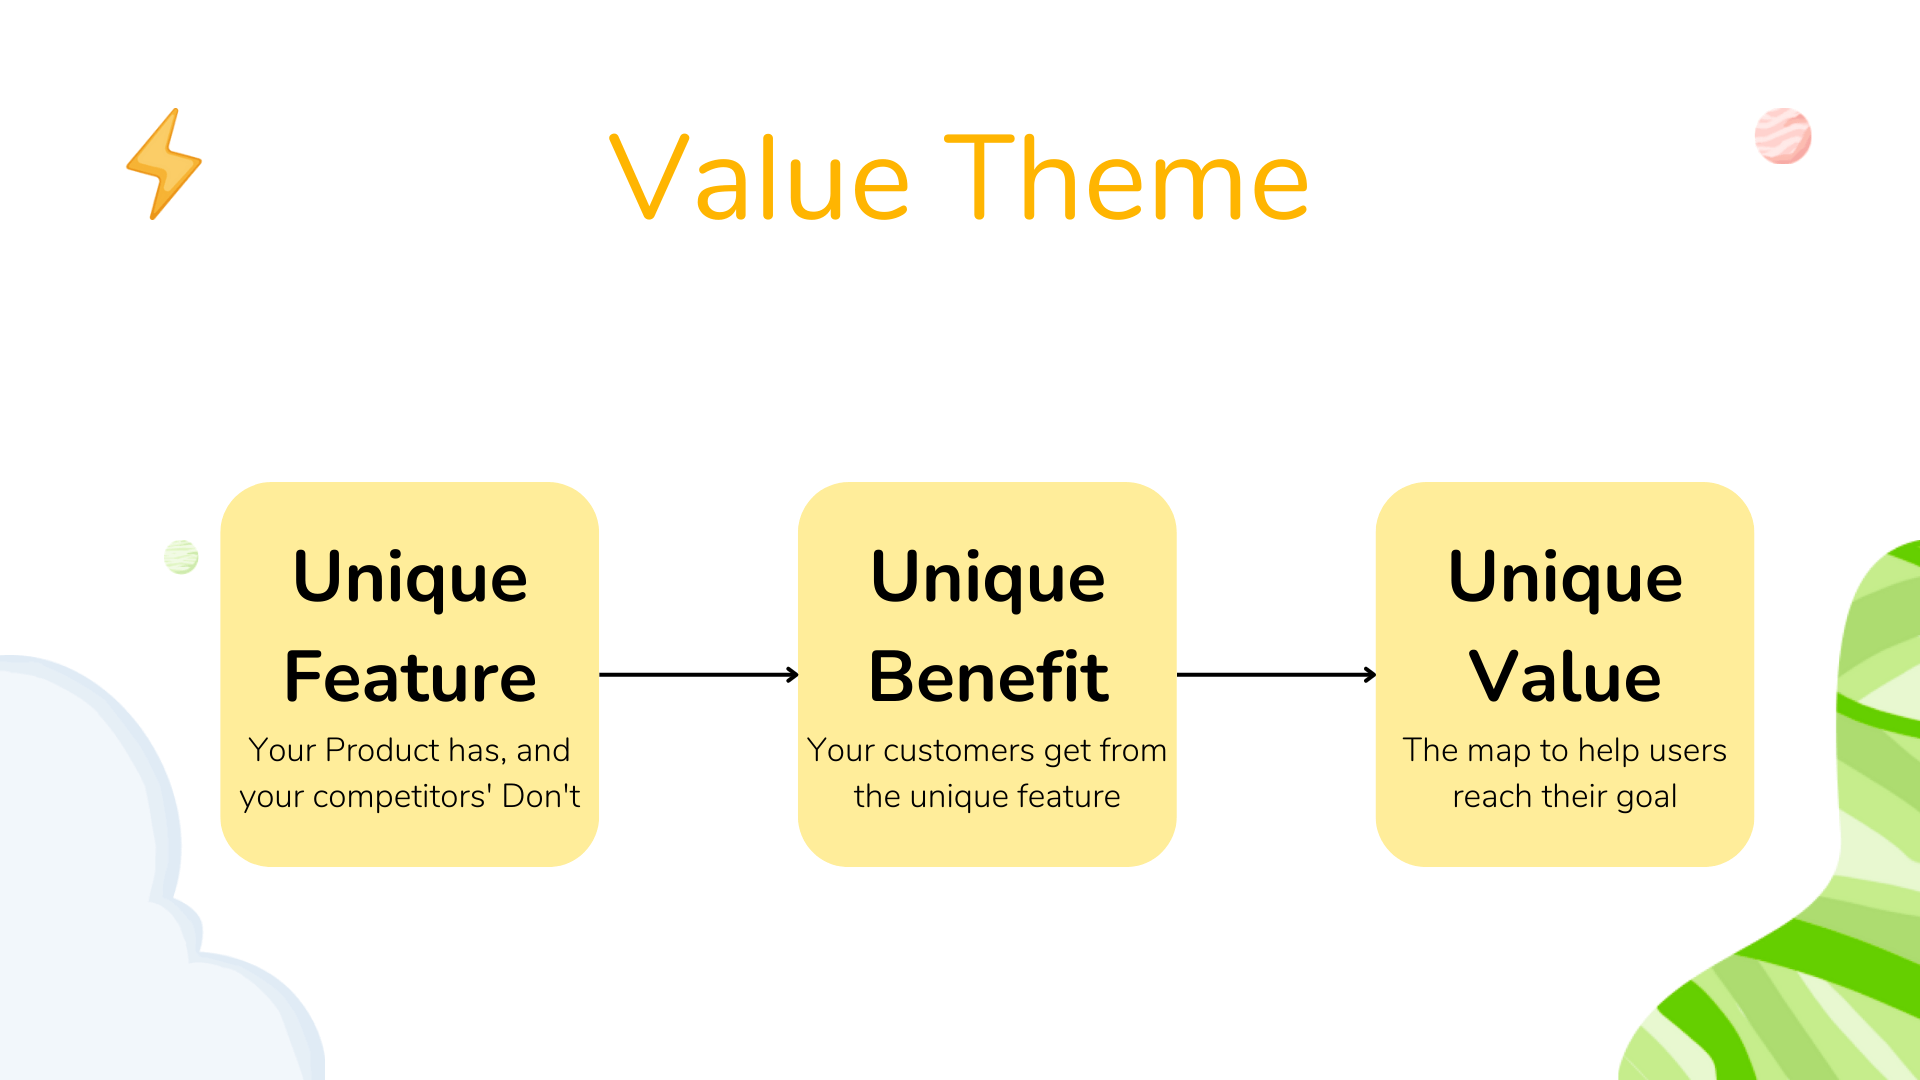 Unique Value Theme